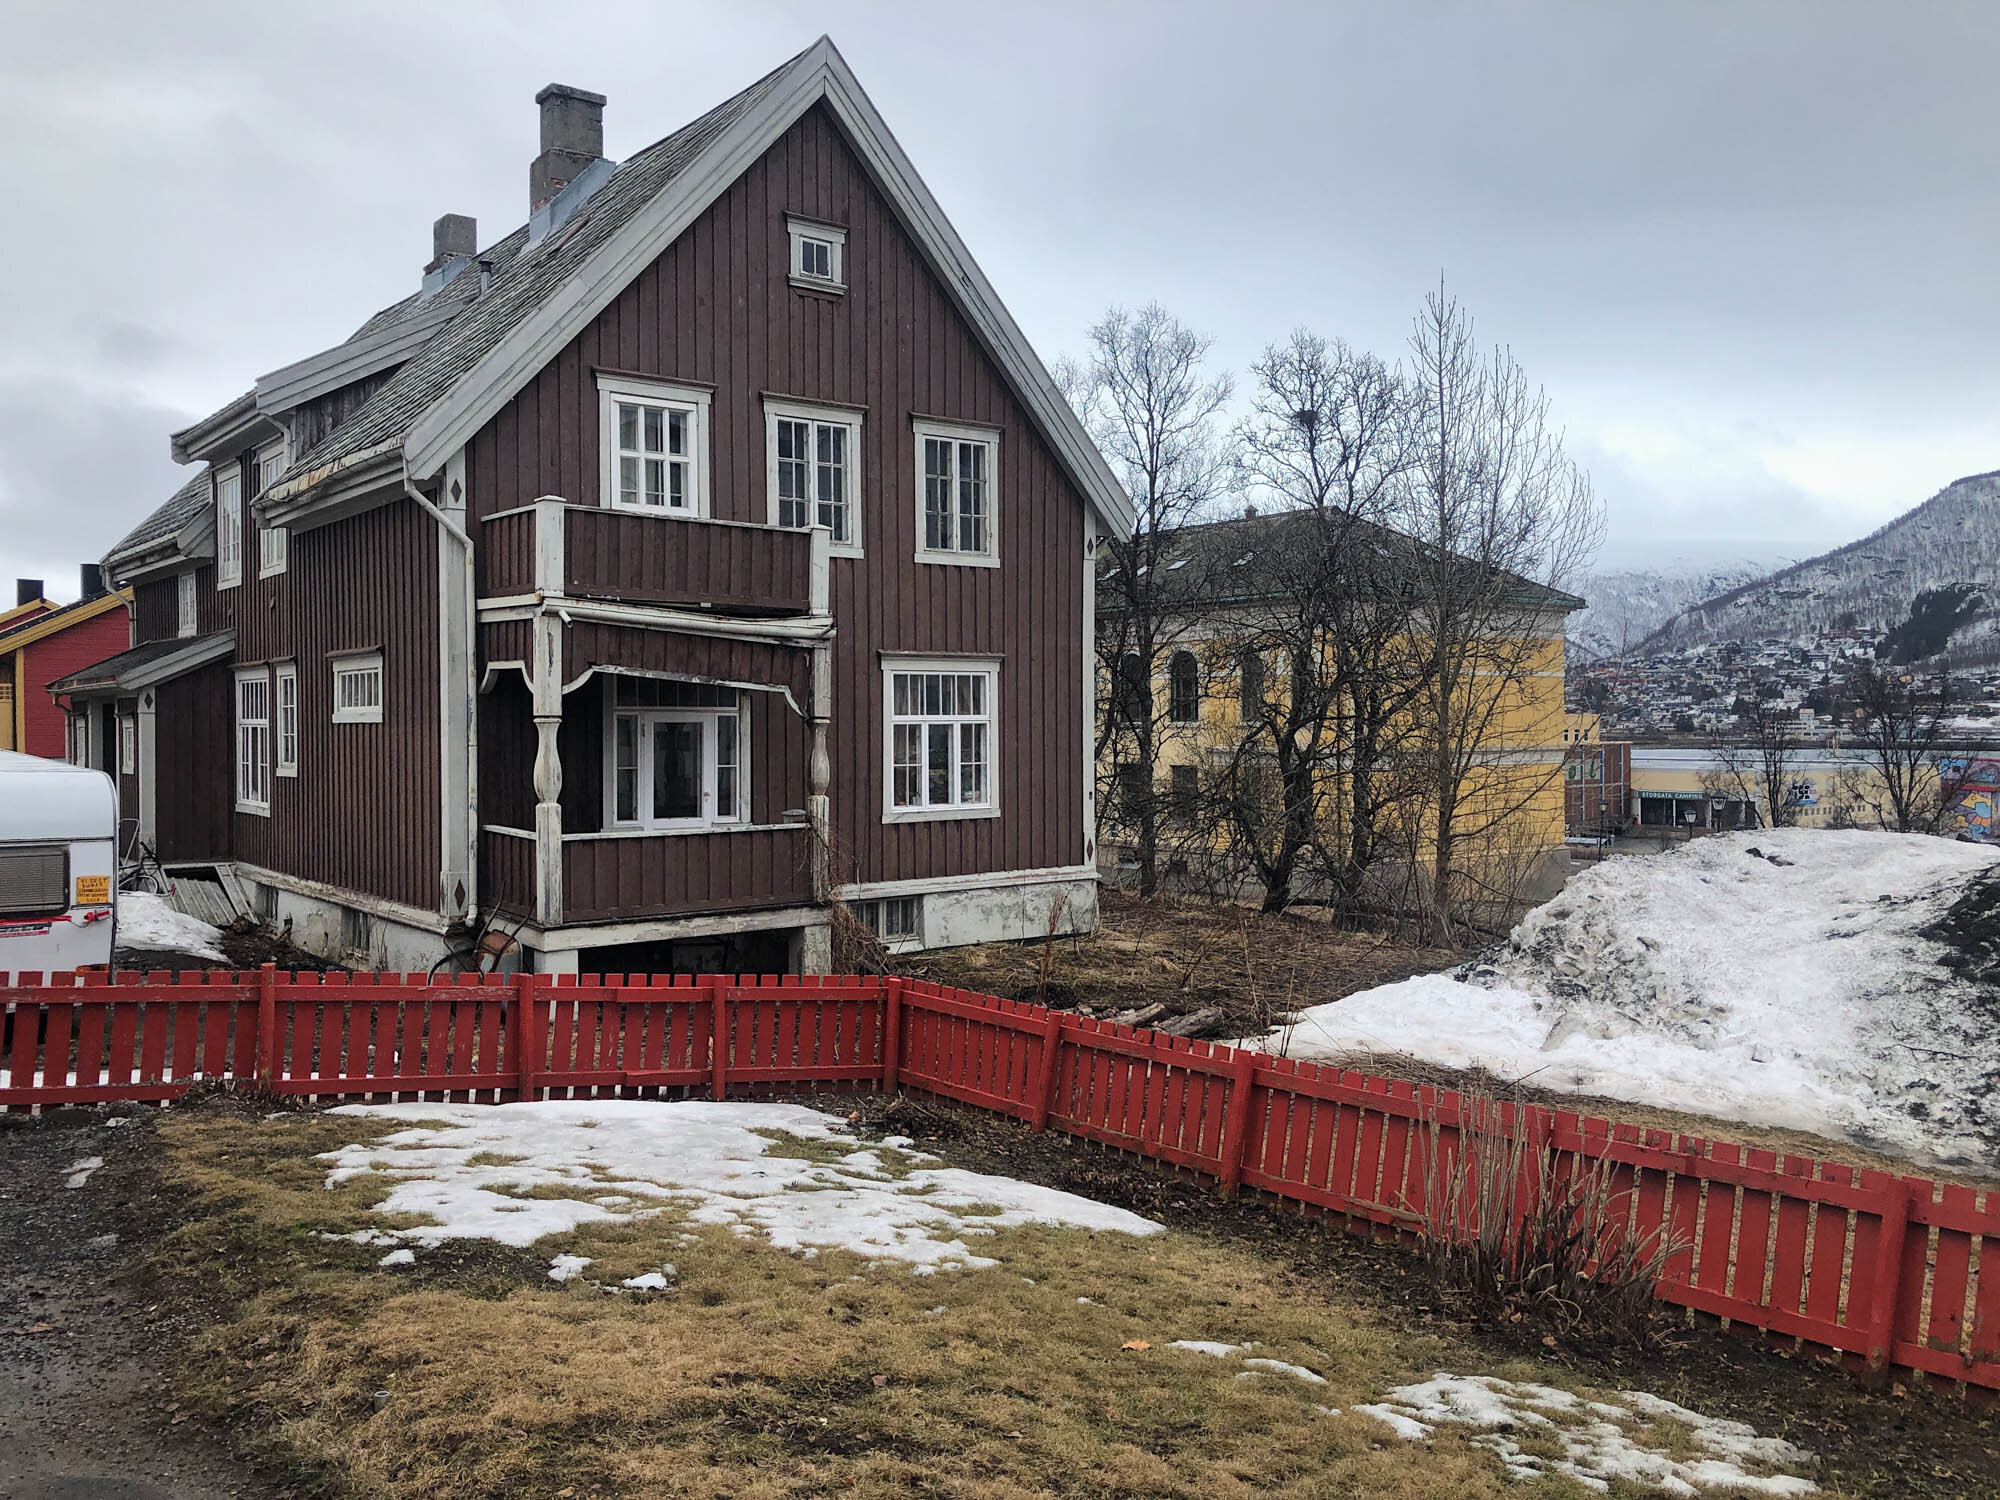  Den gamle direktørboligen i Muségata 4 inngår i planene om å etablere et Kunstens Hus i Tromsø. Muségata 2 i bakgrunnen. Foto: Hilde Sørstrøm 